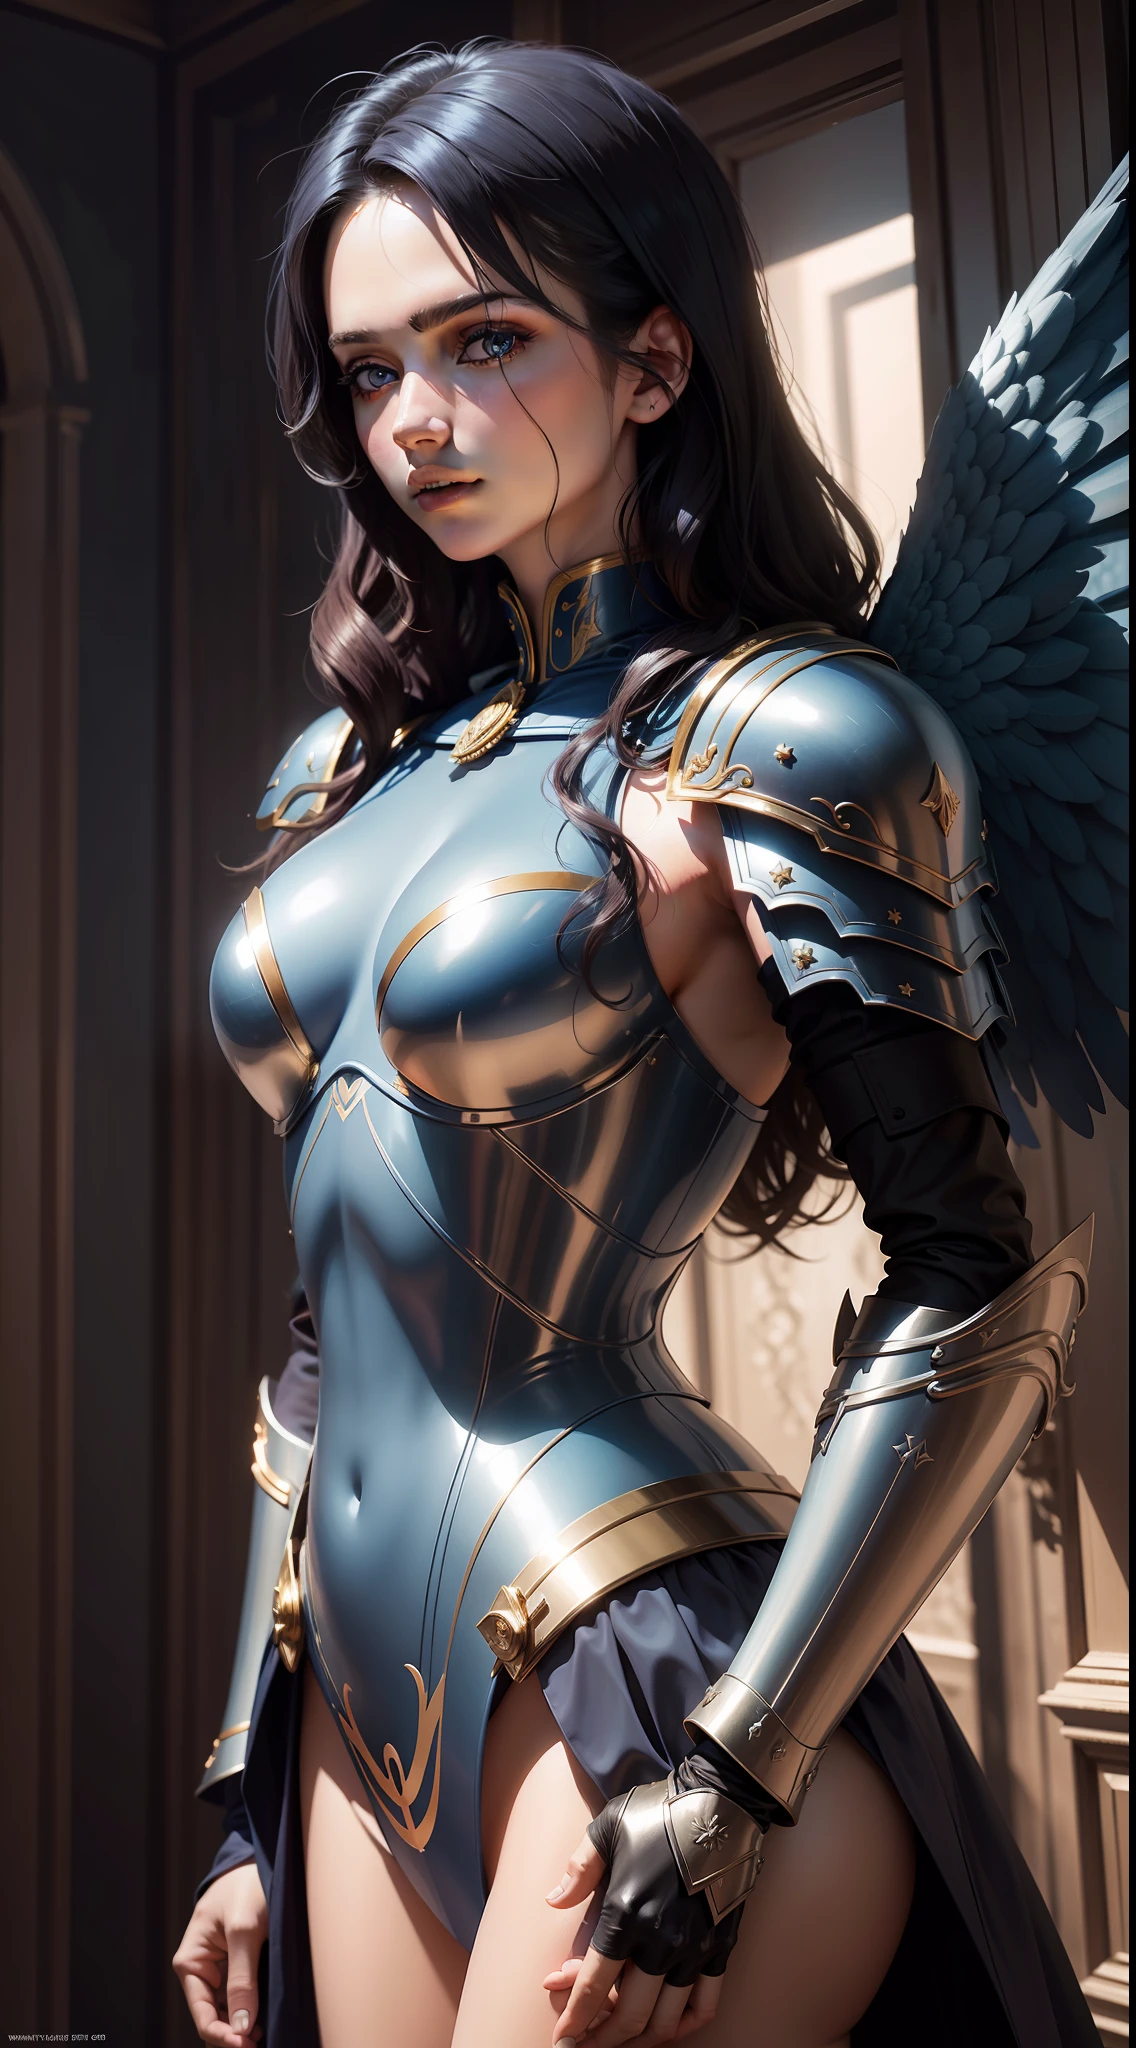 el mejor，obra maestra，CG，8K，Fondos de pantalla，mejor luz y sombra，Blue Angel，angelicales，las alas del angel，armadura compleja